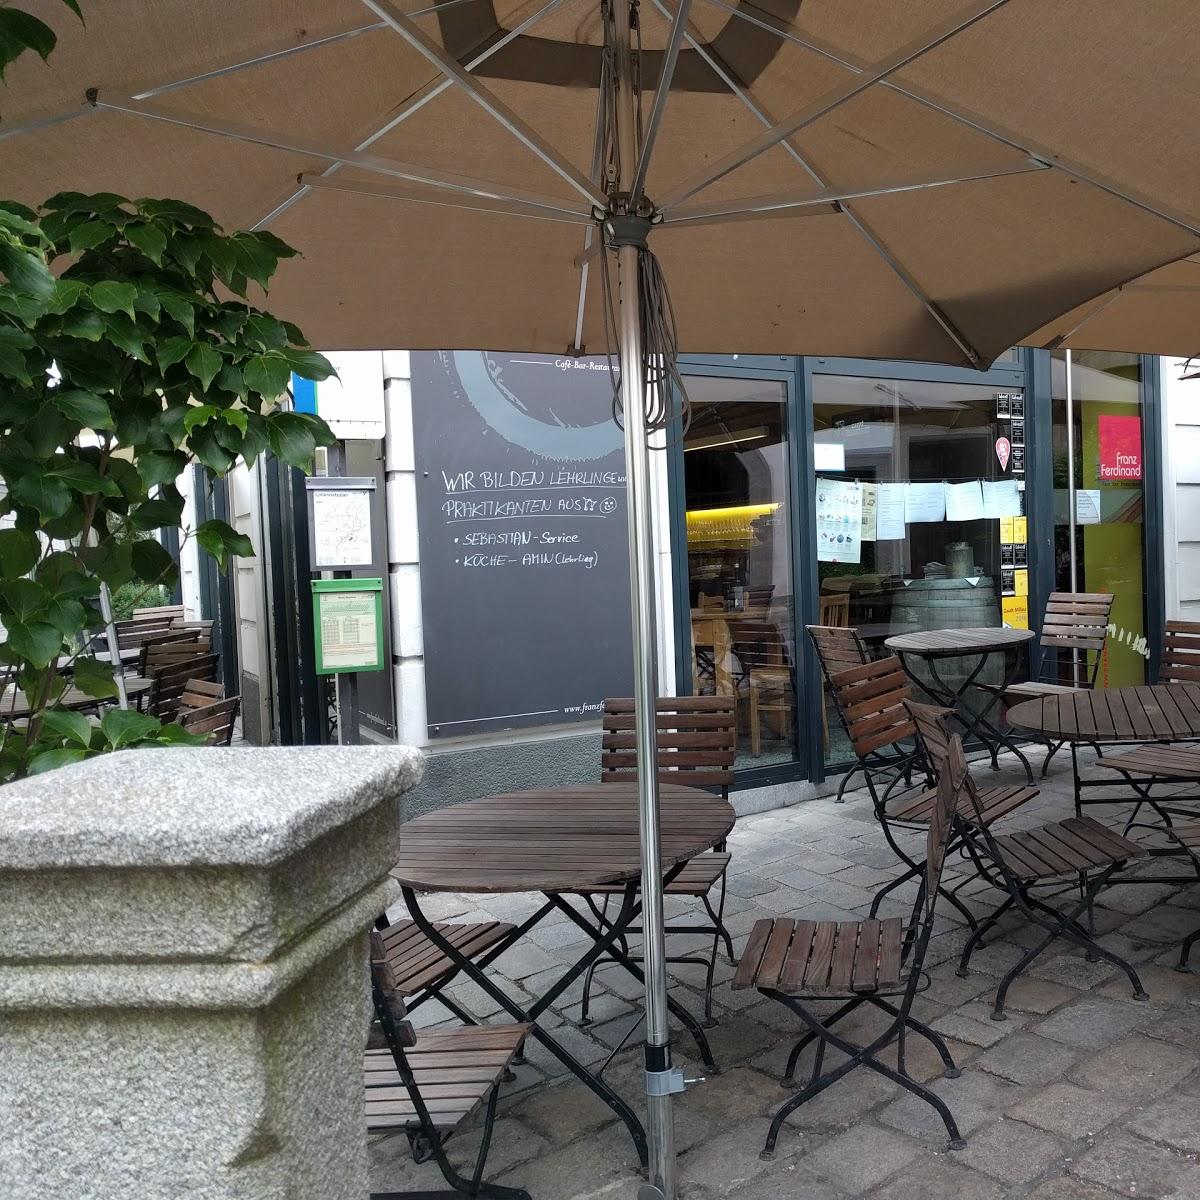 Restaurant "Franz Ferdinand" in Steyr